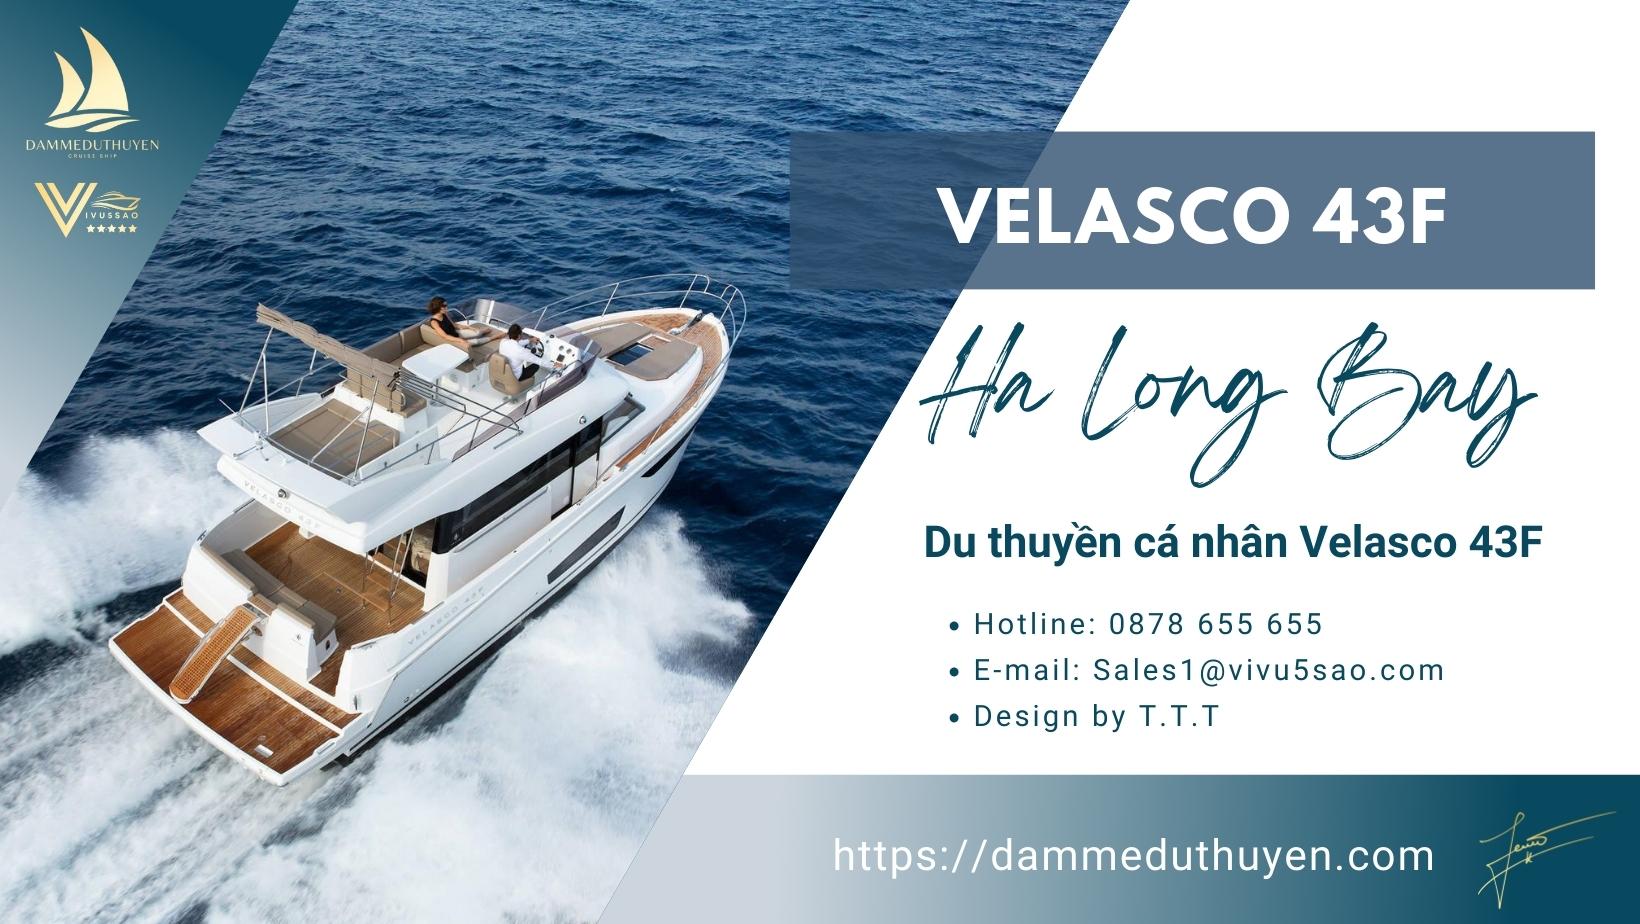 Du thuyền Velasco 43F - Dịch vụ thuê du thuyền cá nhân